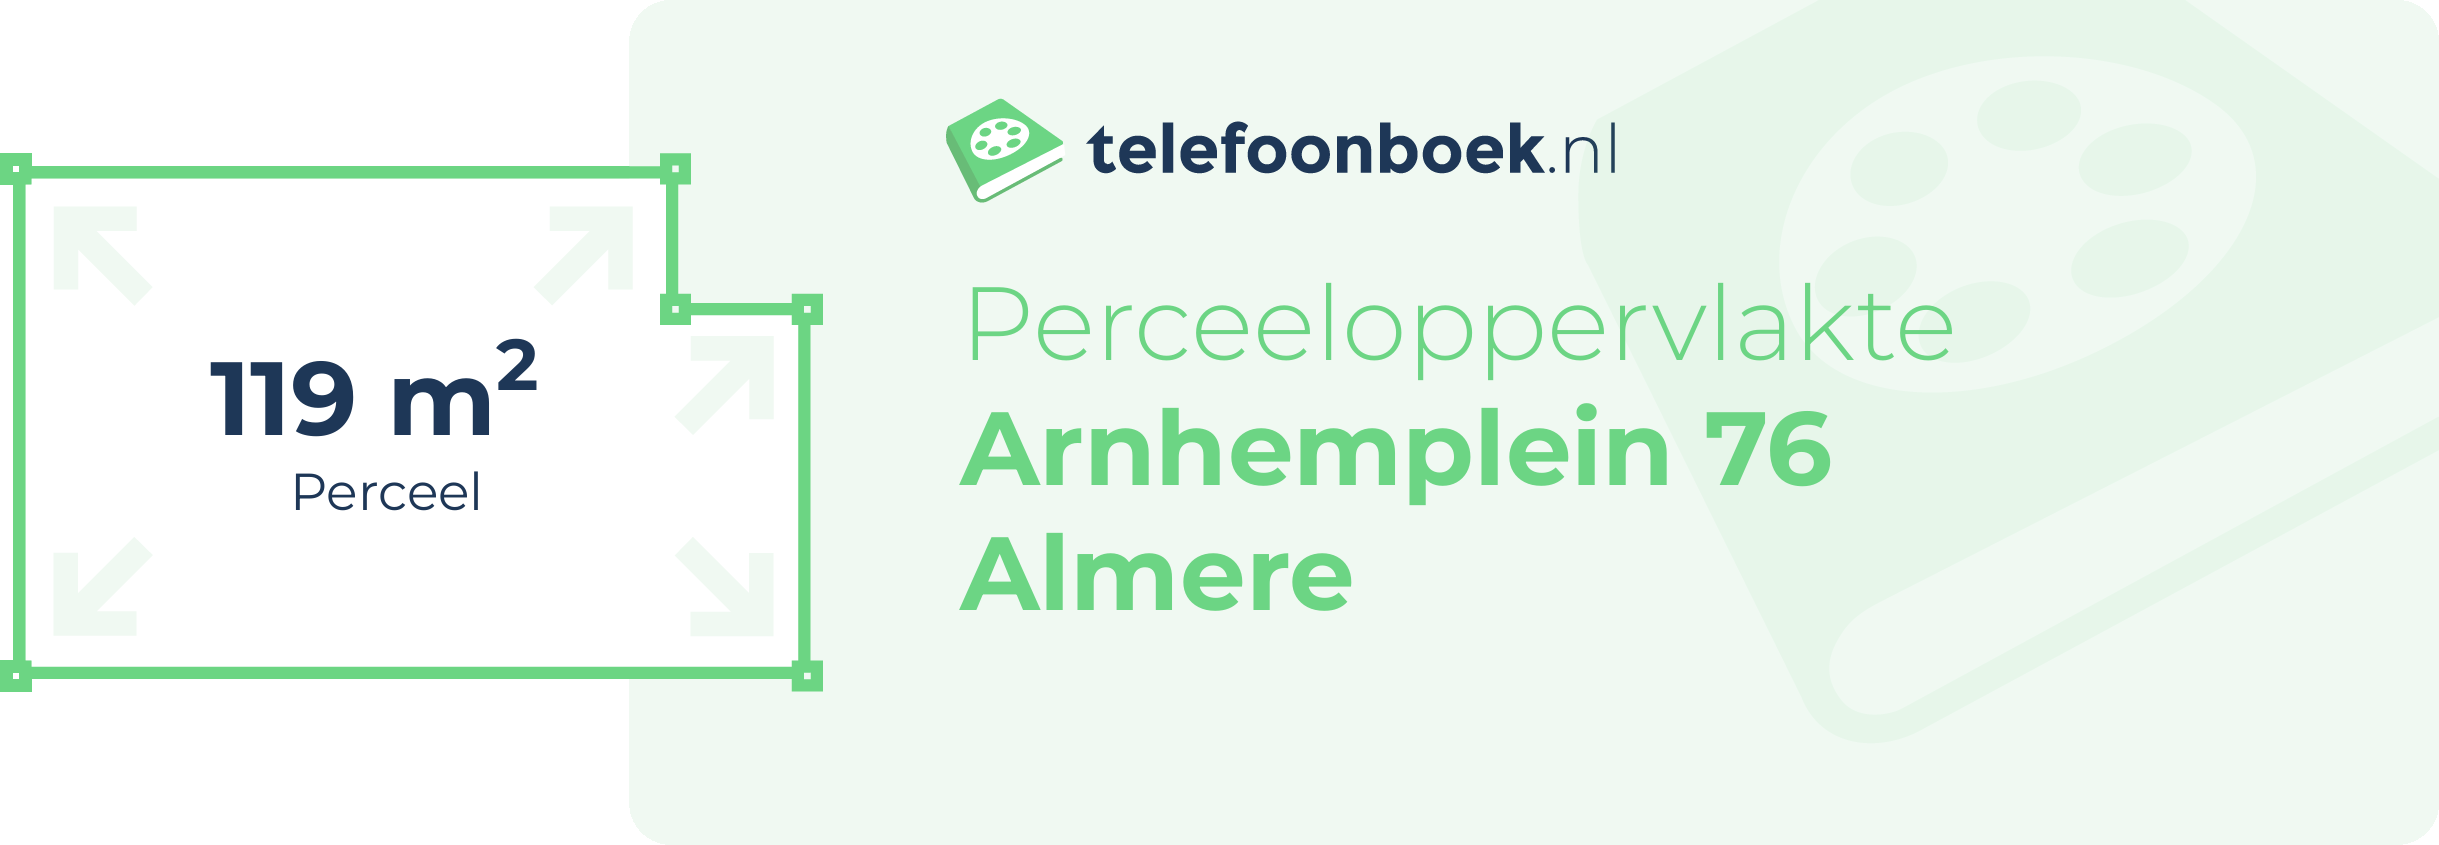 Perceeloppervlakte Arnhemplein 76 Almere